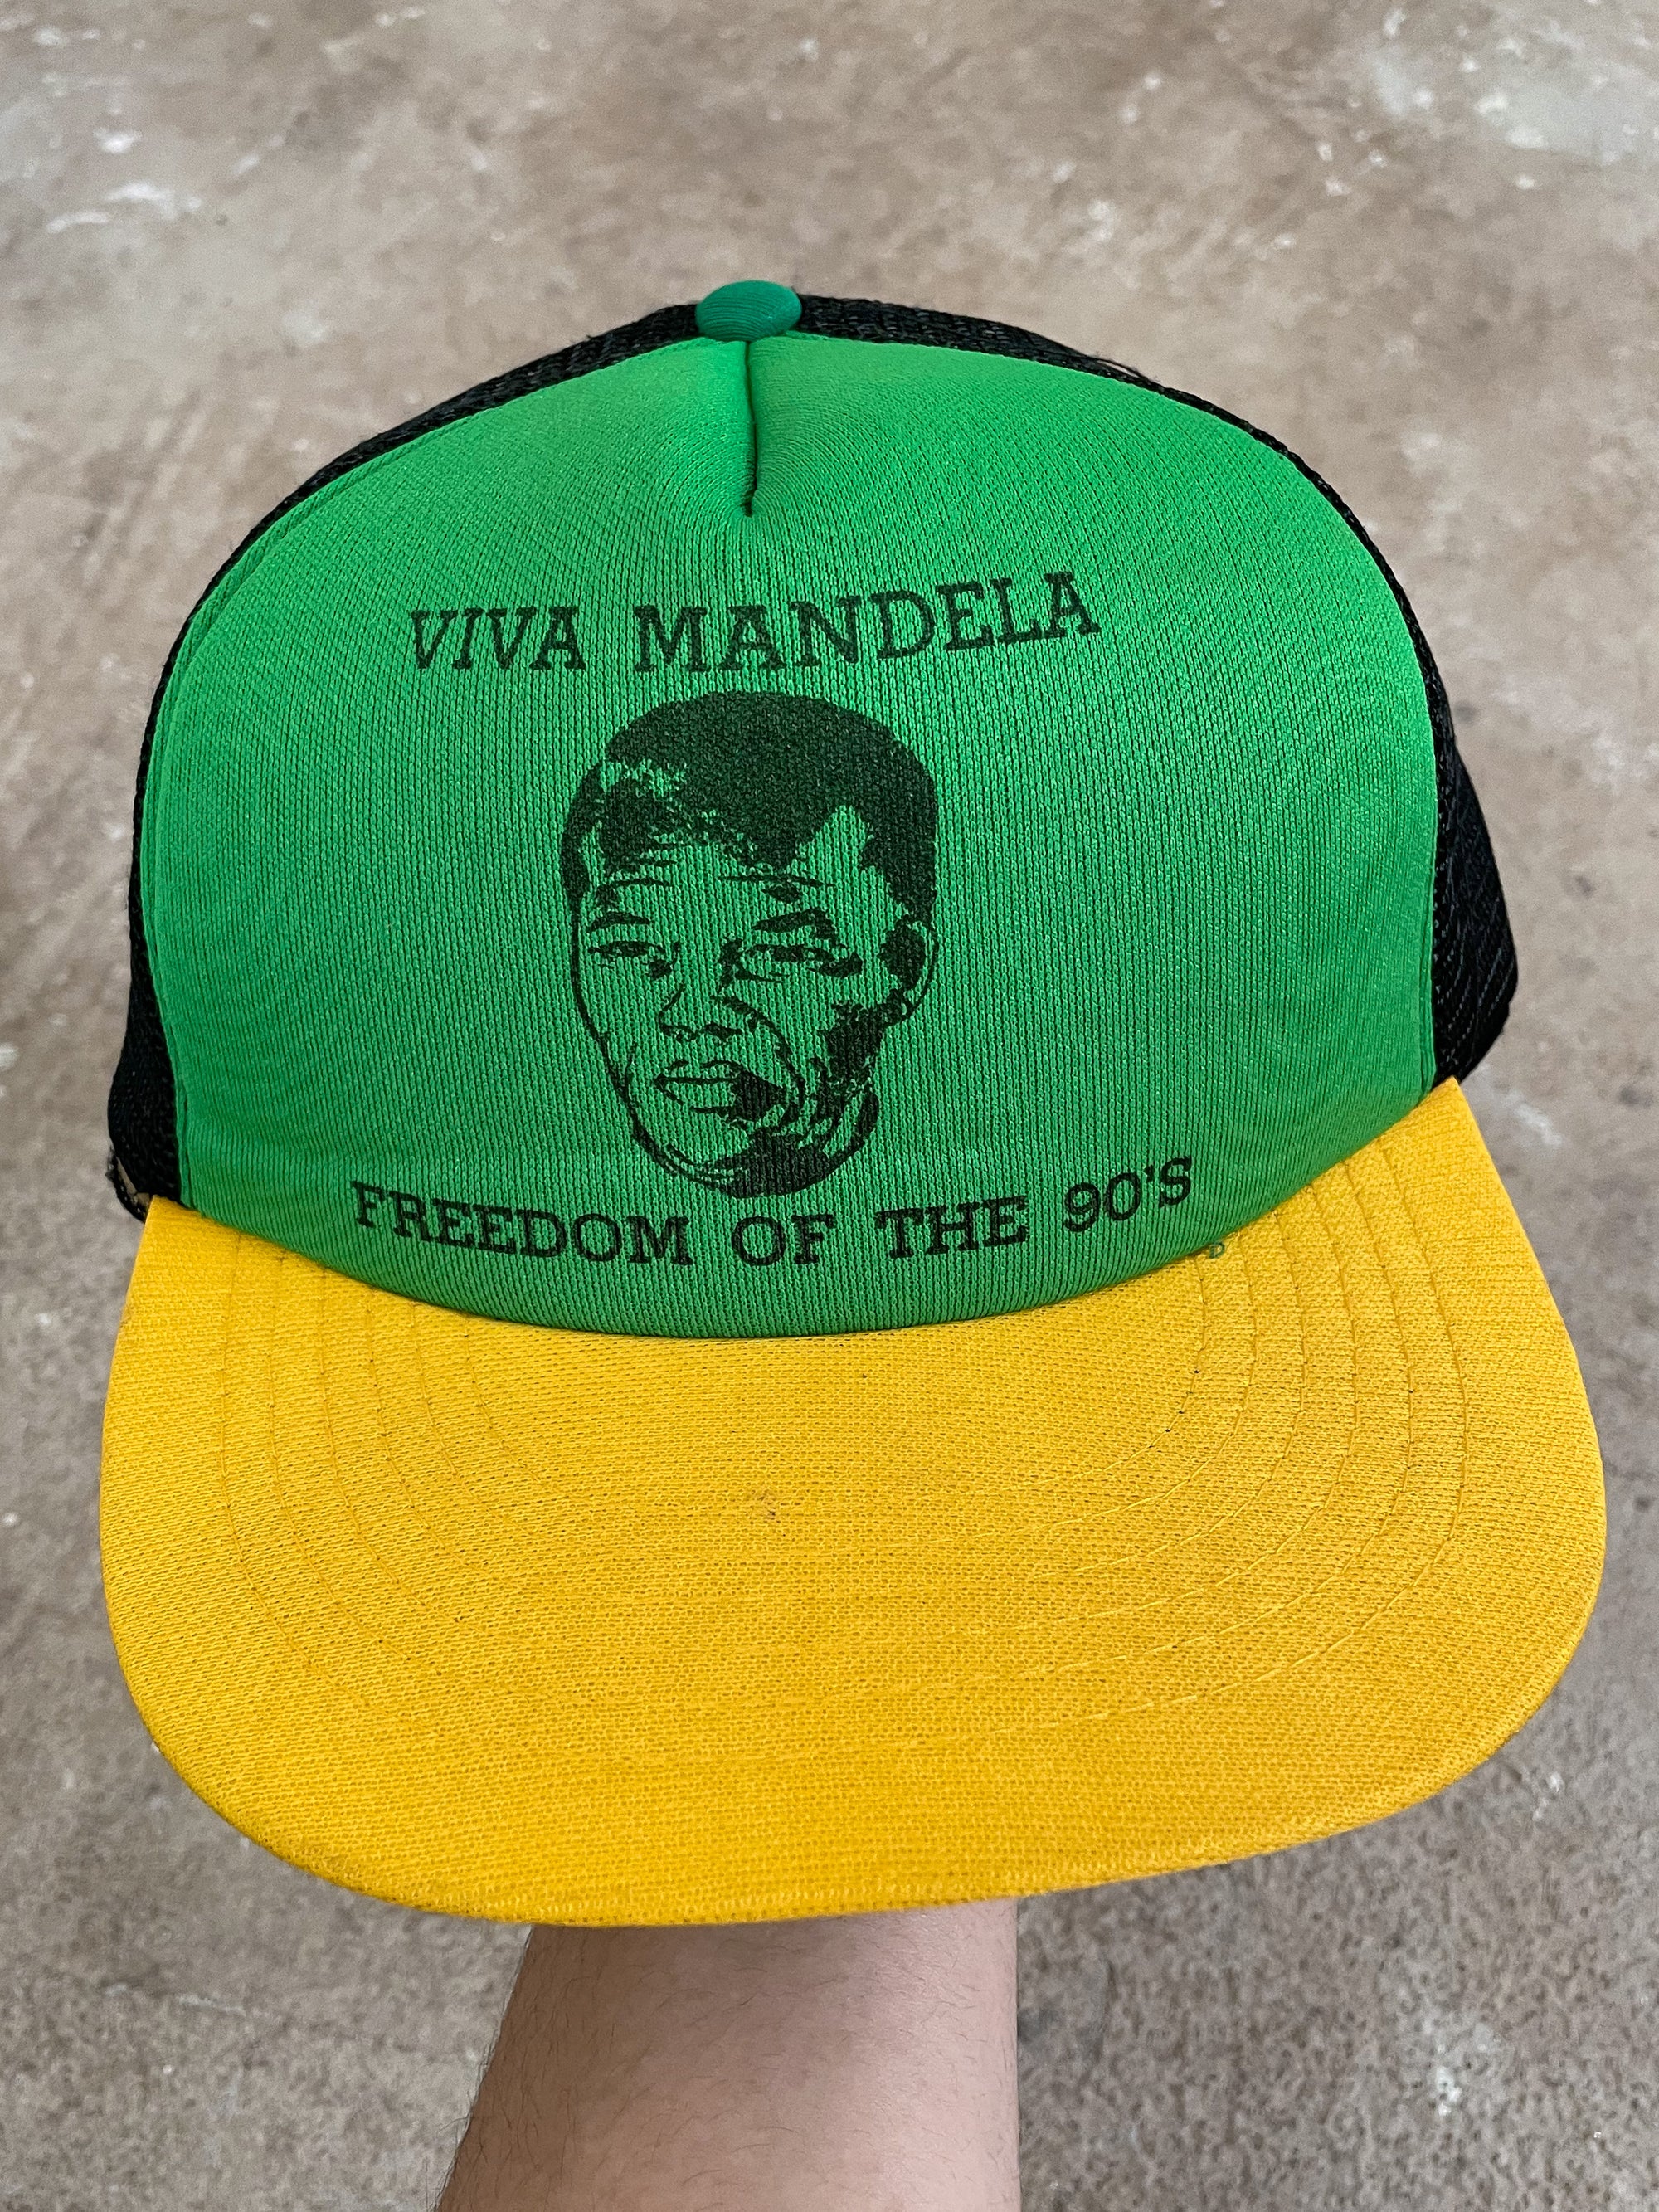 1990s “Viva Mandela” Trucker Hat